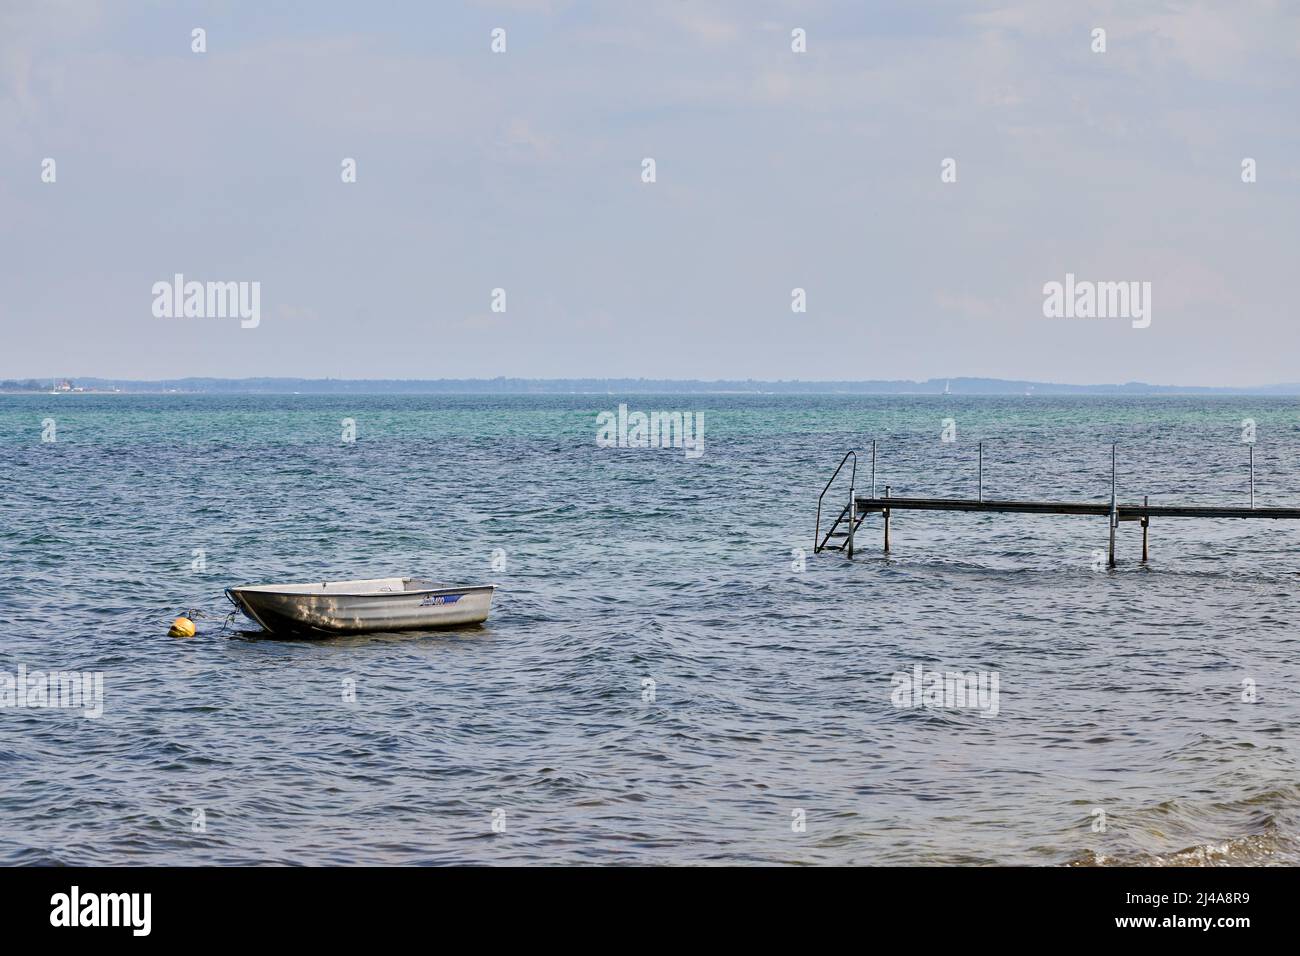 Dinghy and bathing jetty, summer; Rørvig, Denmark Stock Photo